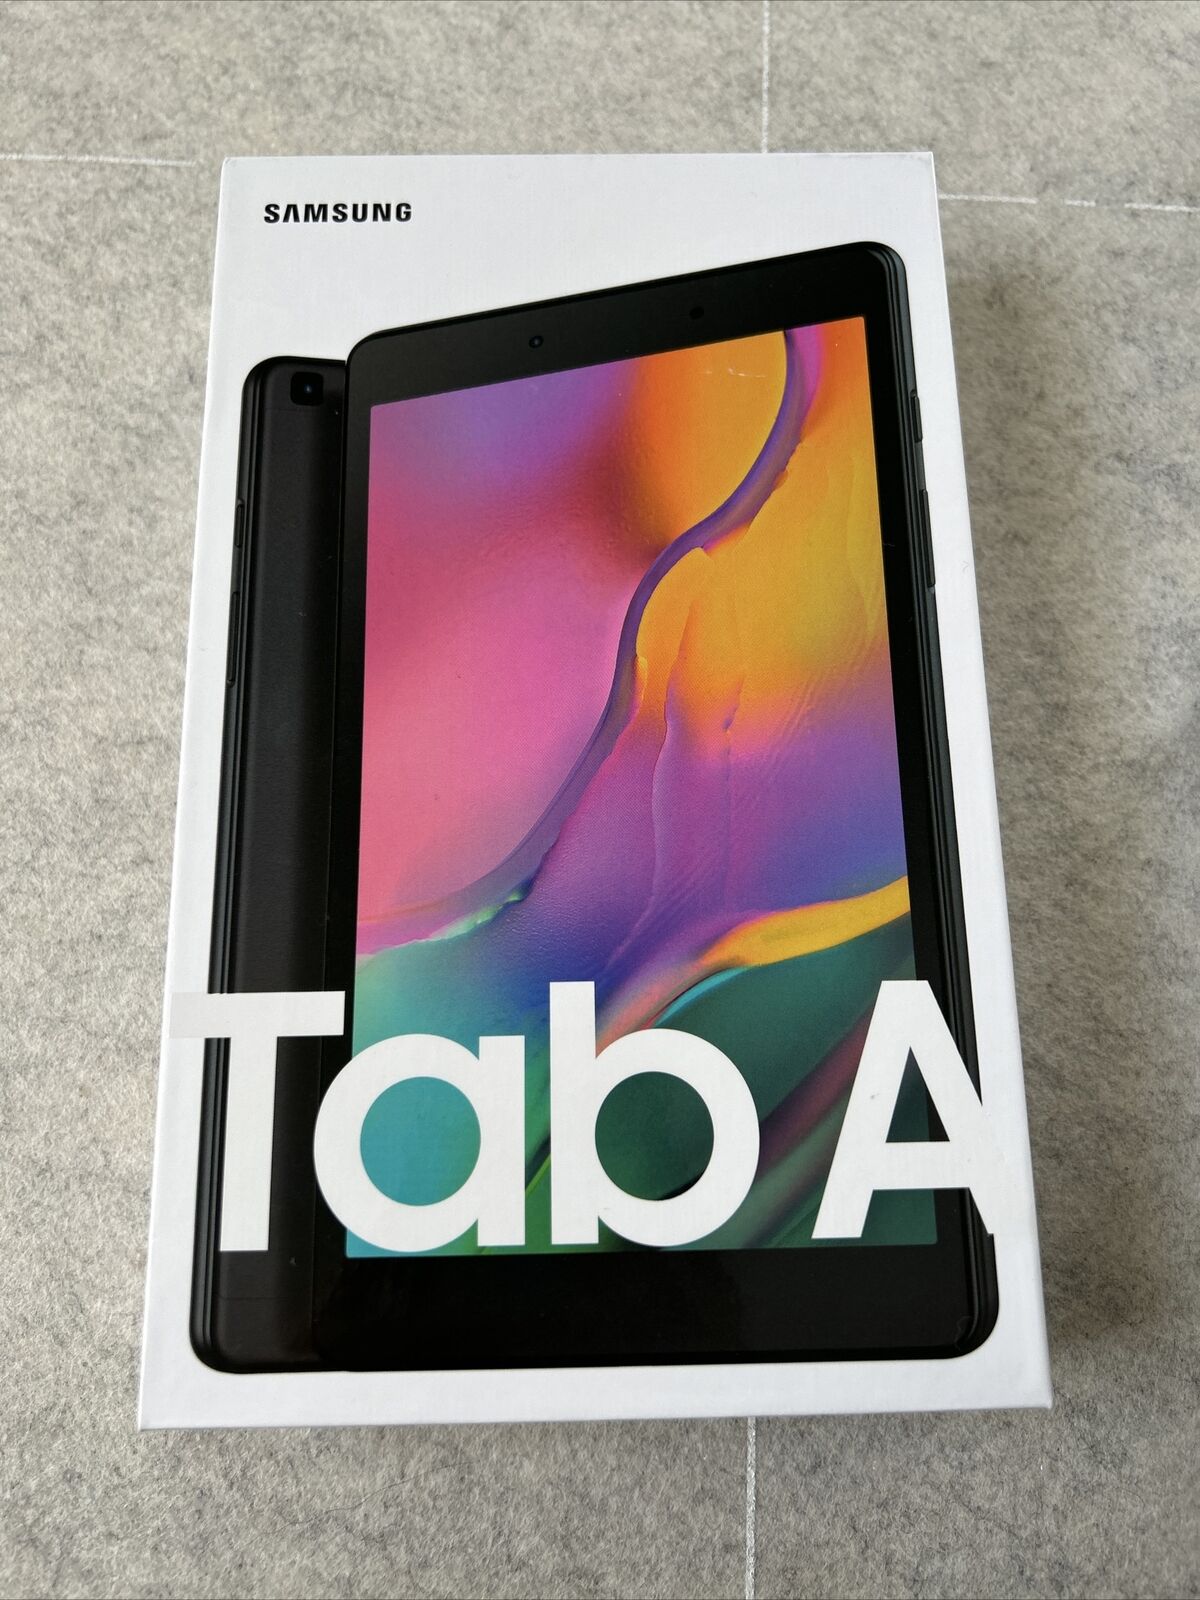 NEW Samsung Galaxy Tab A 32GB, Wi-Fi (Unlocked) 8 inch Tablet- Black